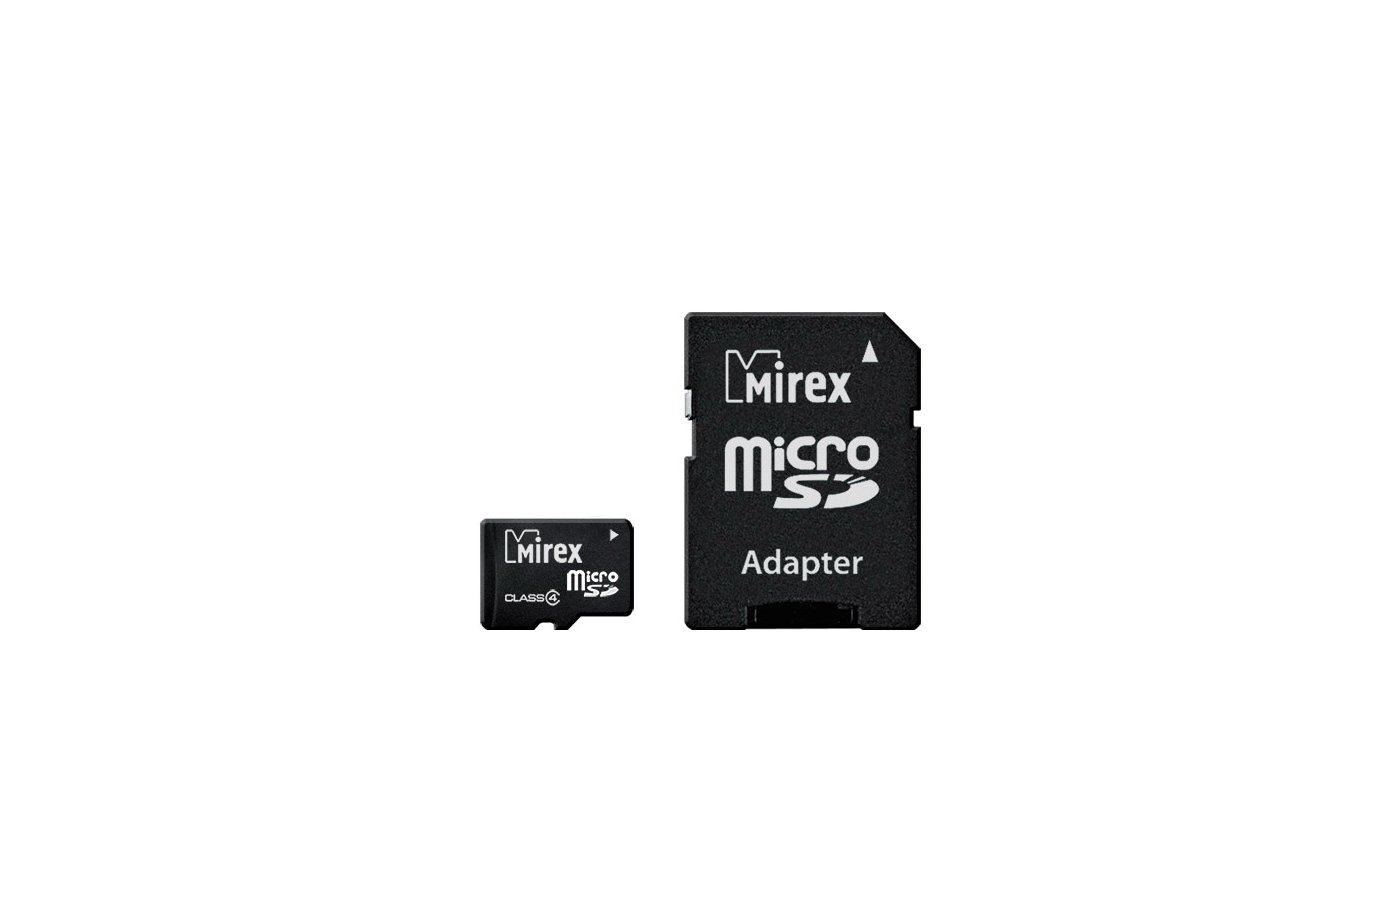 Микро sd классы. Память Mirex (MICROSDHC) 8gb class 10+адаптер. Карта памяти Mirex MICROSDHC 16gb class 10 13613-ad10sd16 + Adapter. Карта памяти Mirex Micro SDHC 16 GB class 4. Карта памяти Mirex MICROSD 128 GB.